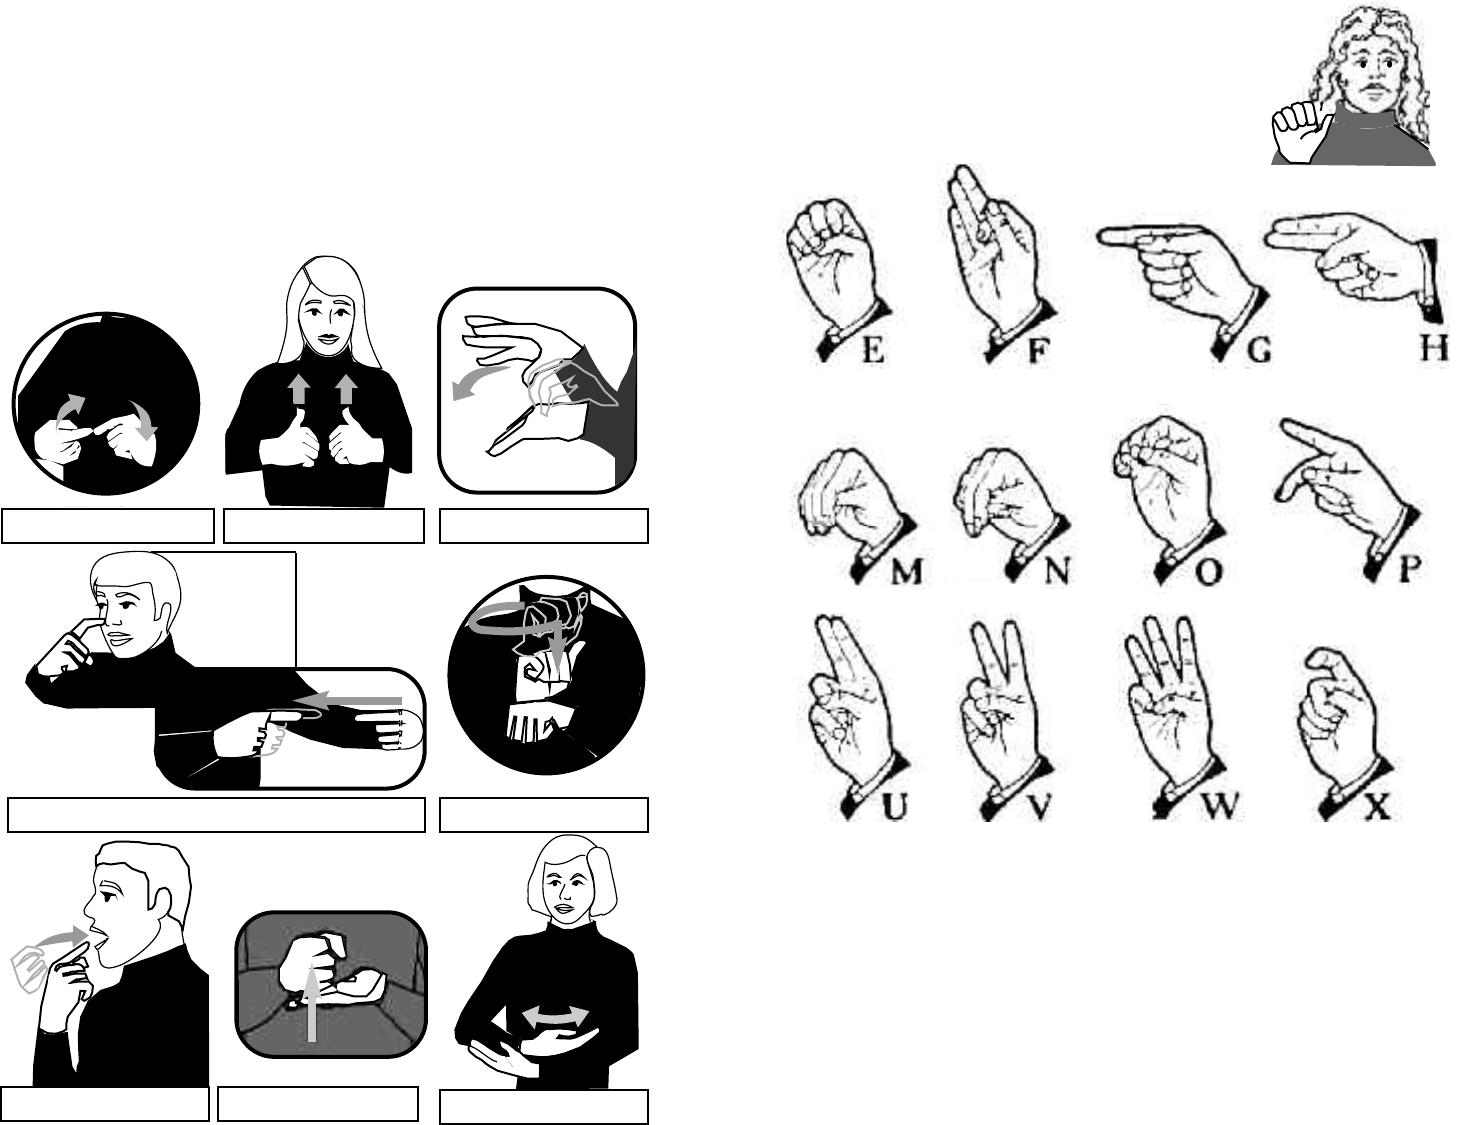 Basic Medical Sign Language